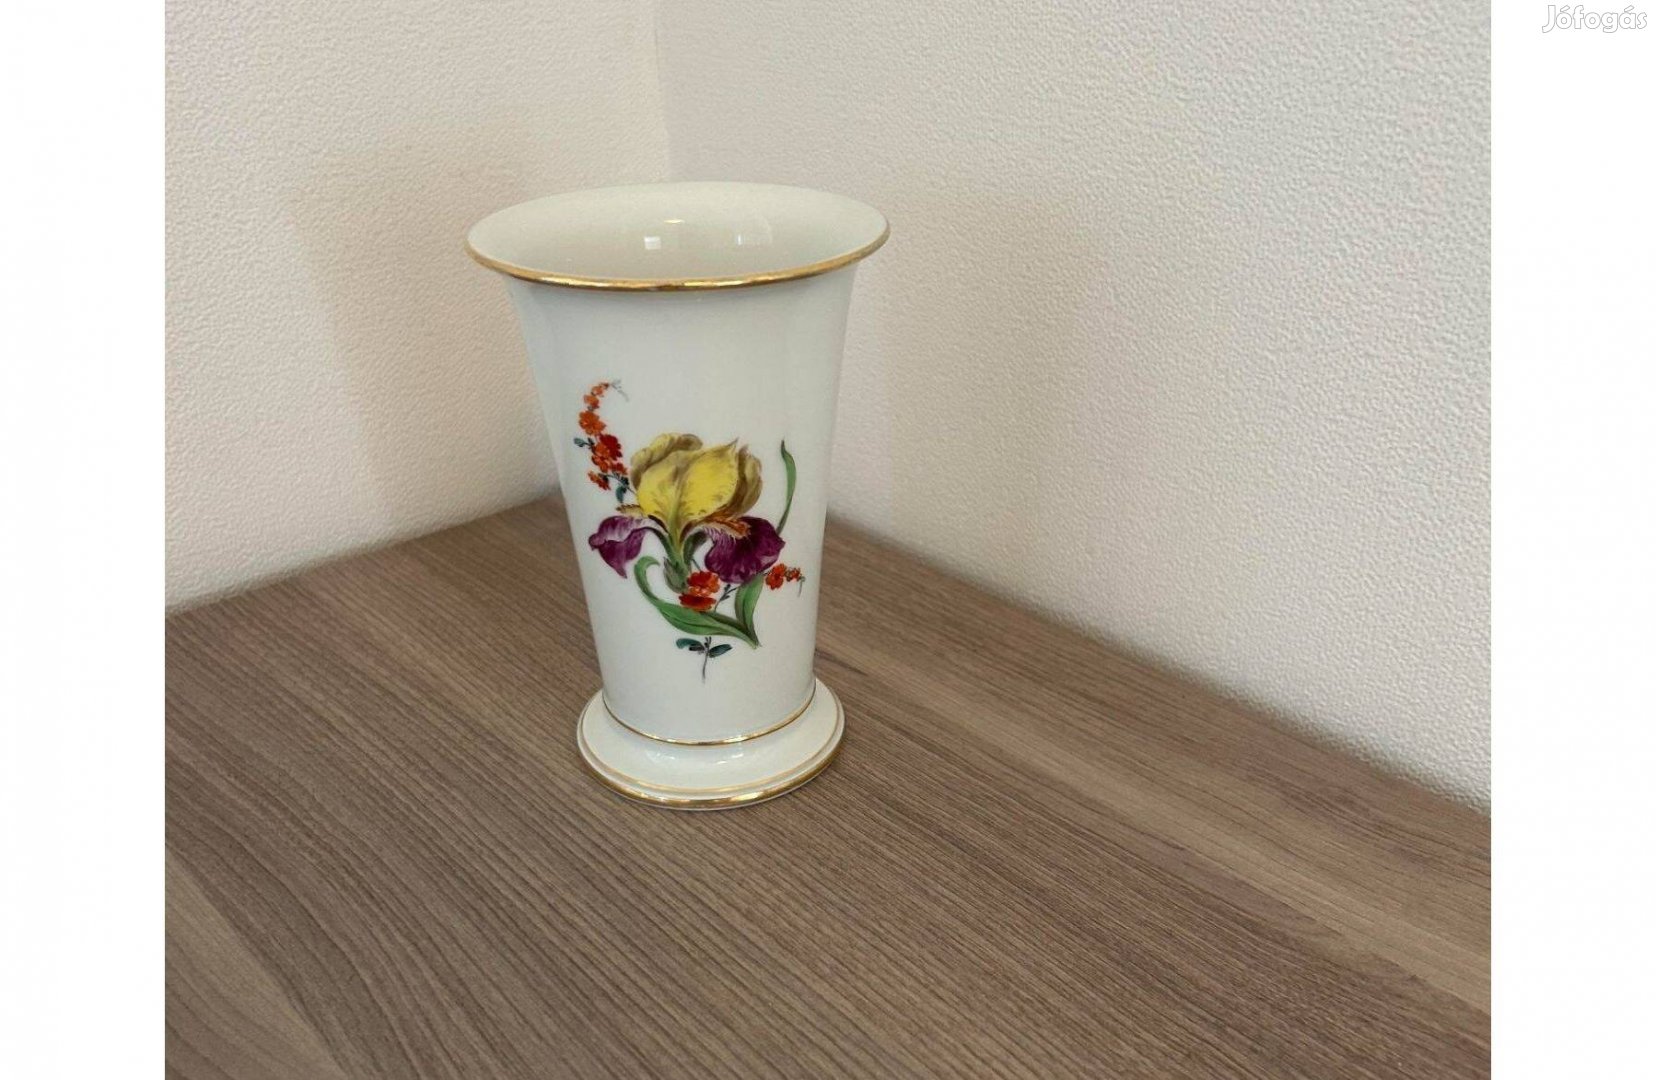 Hibatlan meisseni váza (14cm magas) eladó